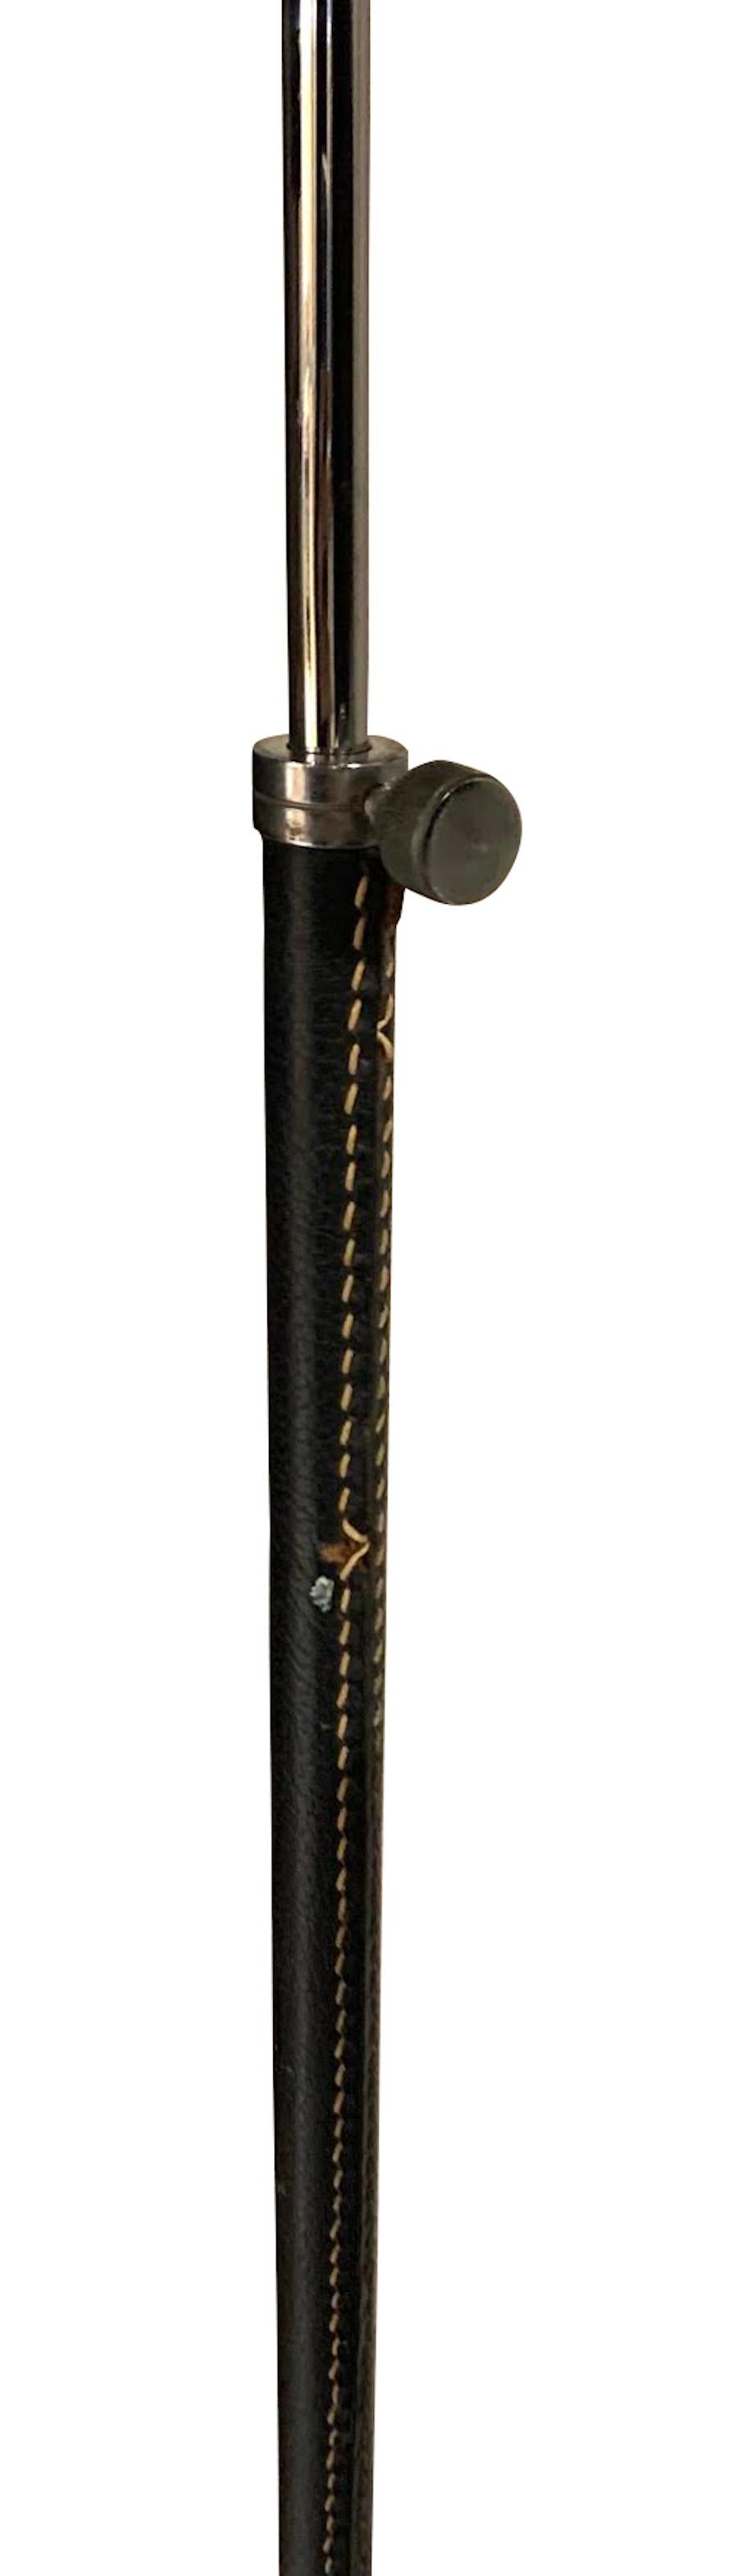 Lampadaire en cuir noir espagnol des années 1960 avec surpiqûres contrastées de couleur naturelle.
Pied tripode décoratif en argent.
Hauteur de l'appareil 47